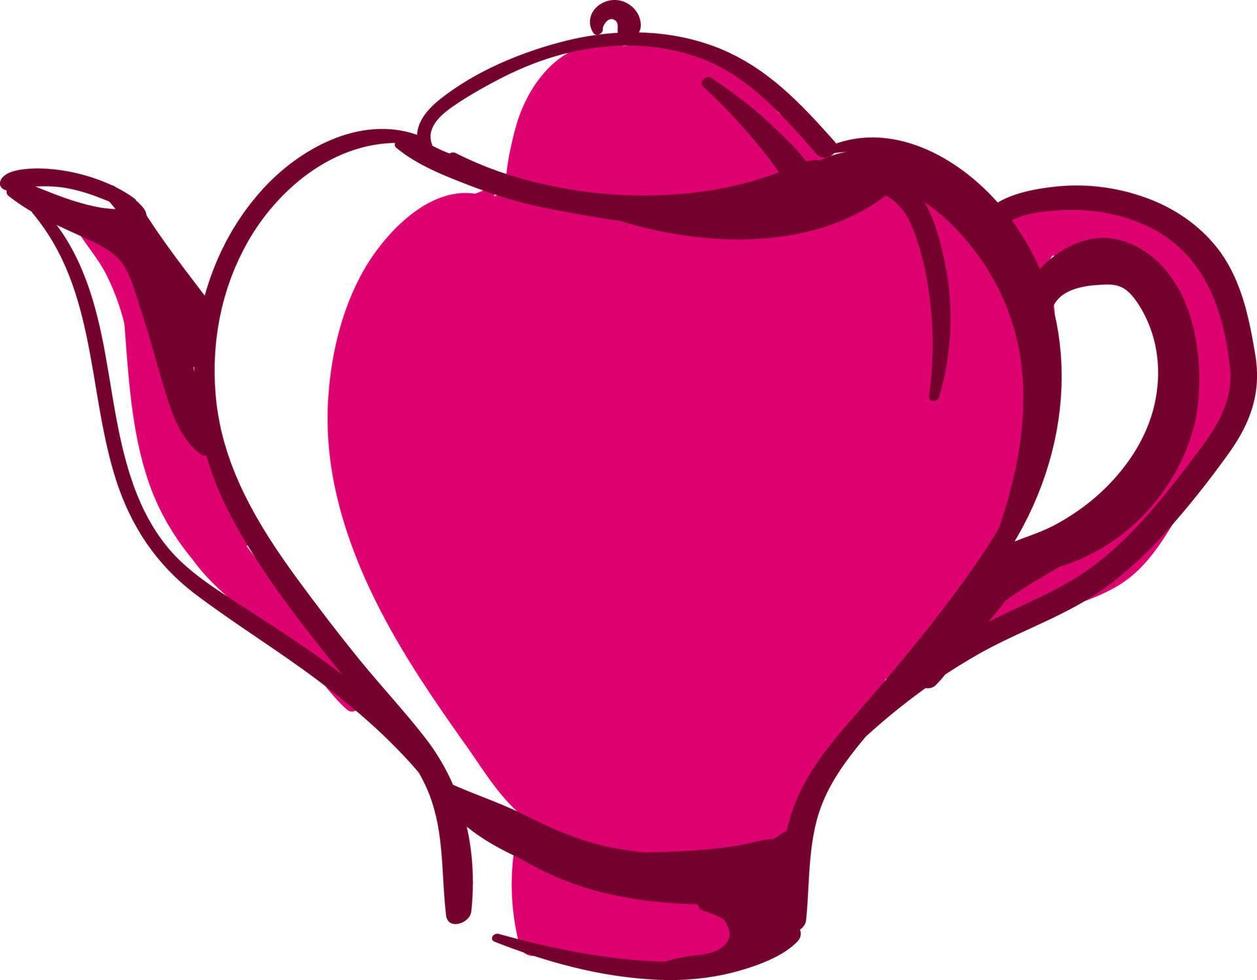 bule de chá rosa, ilustração, vetor em fundo branco